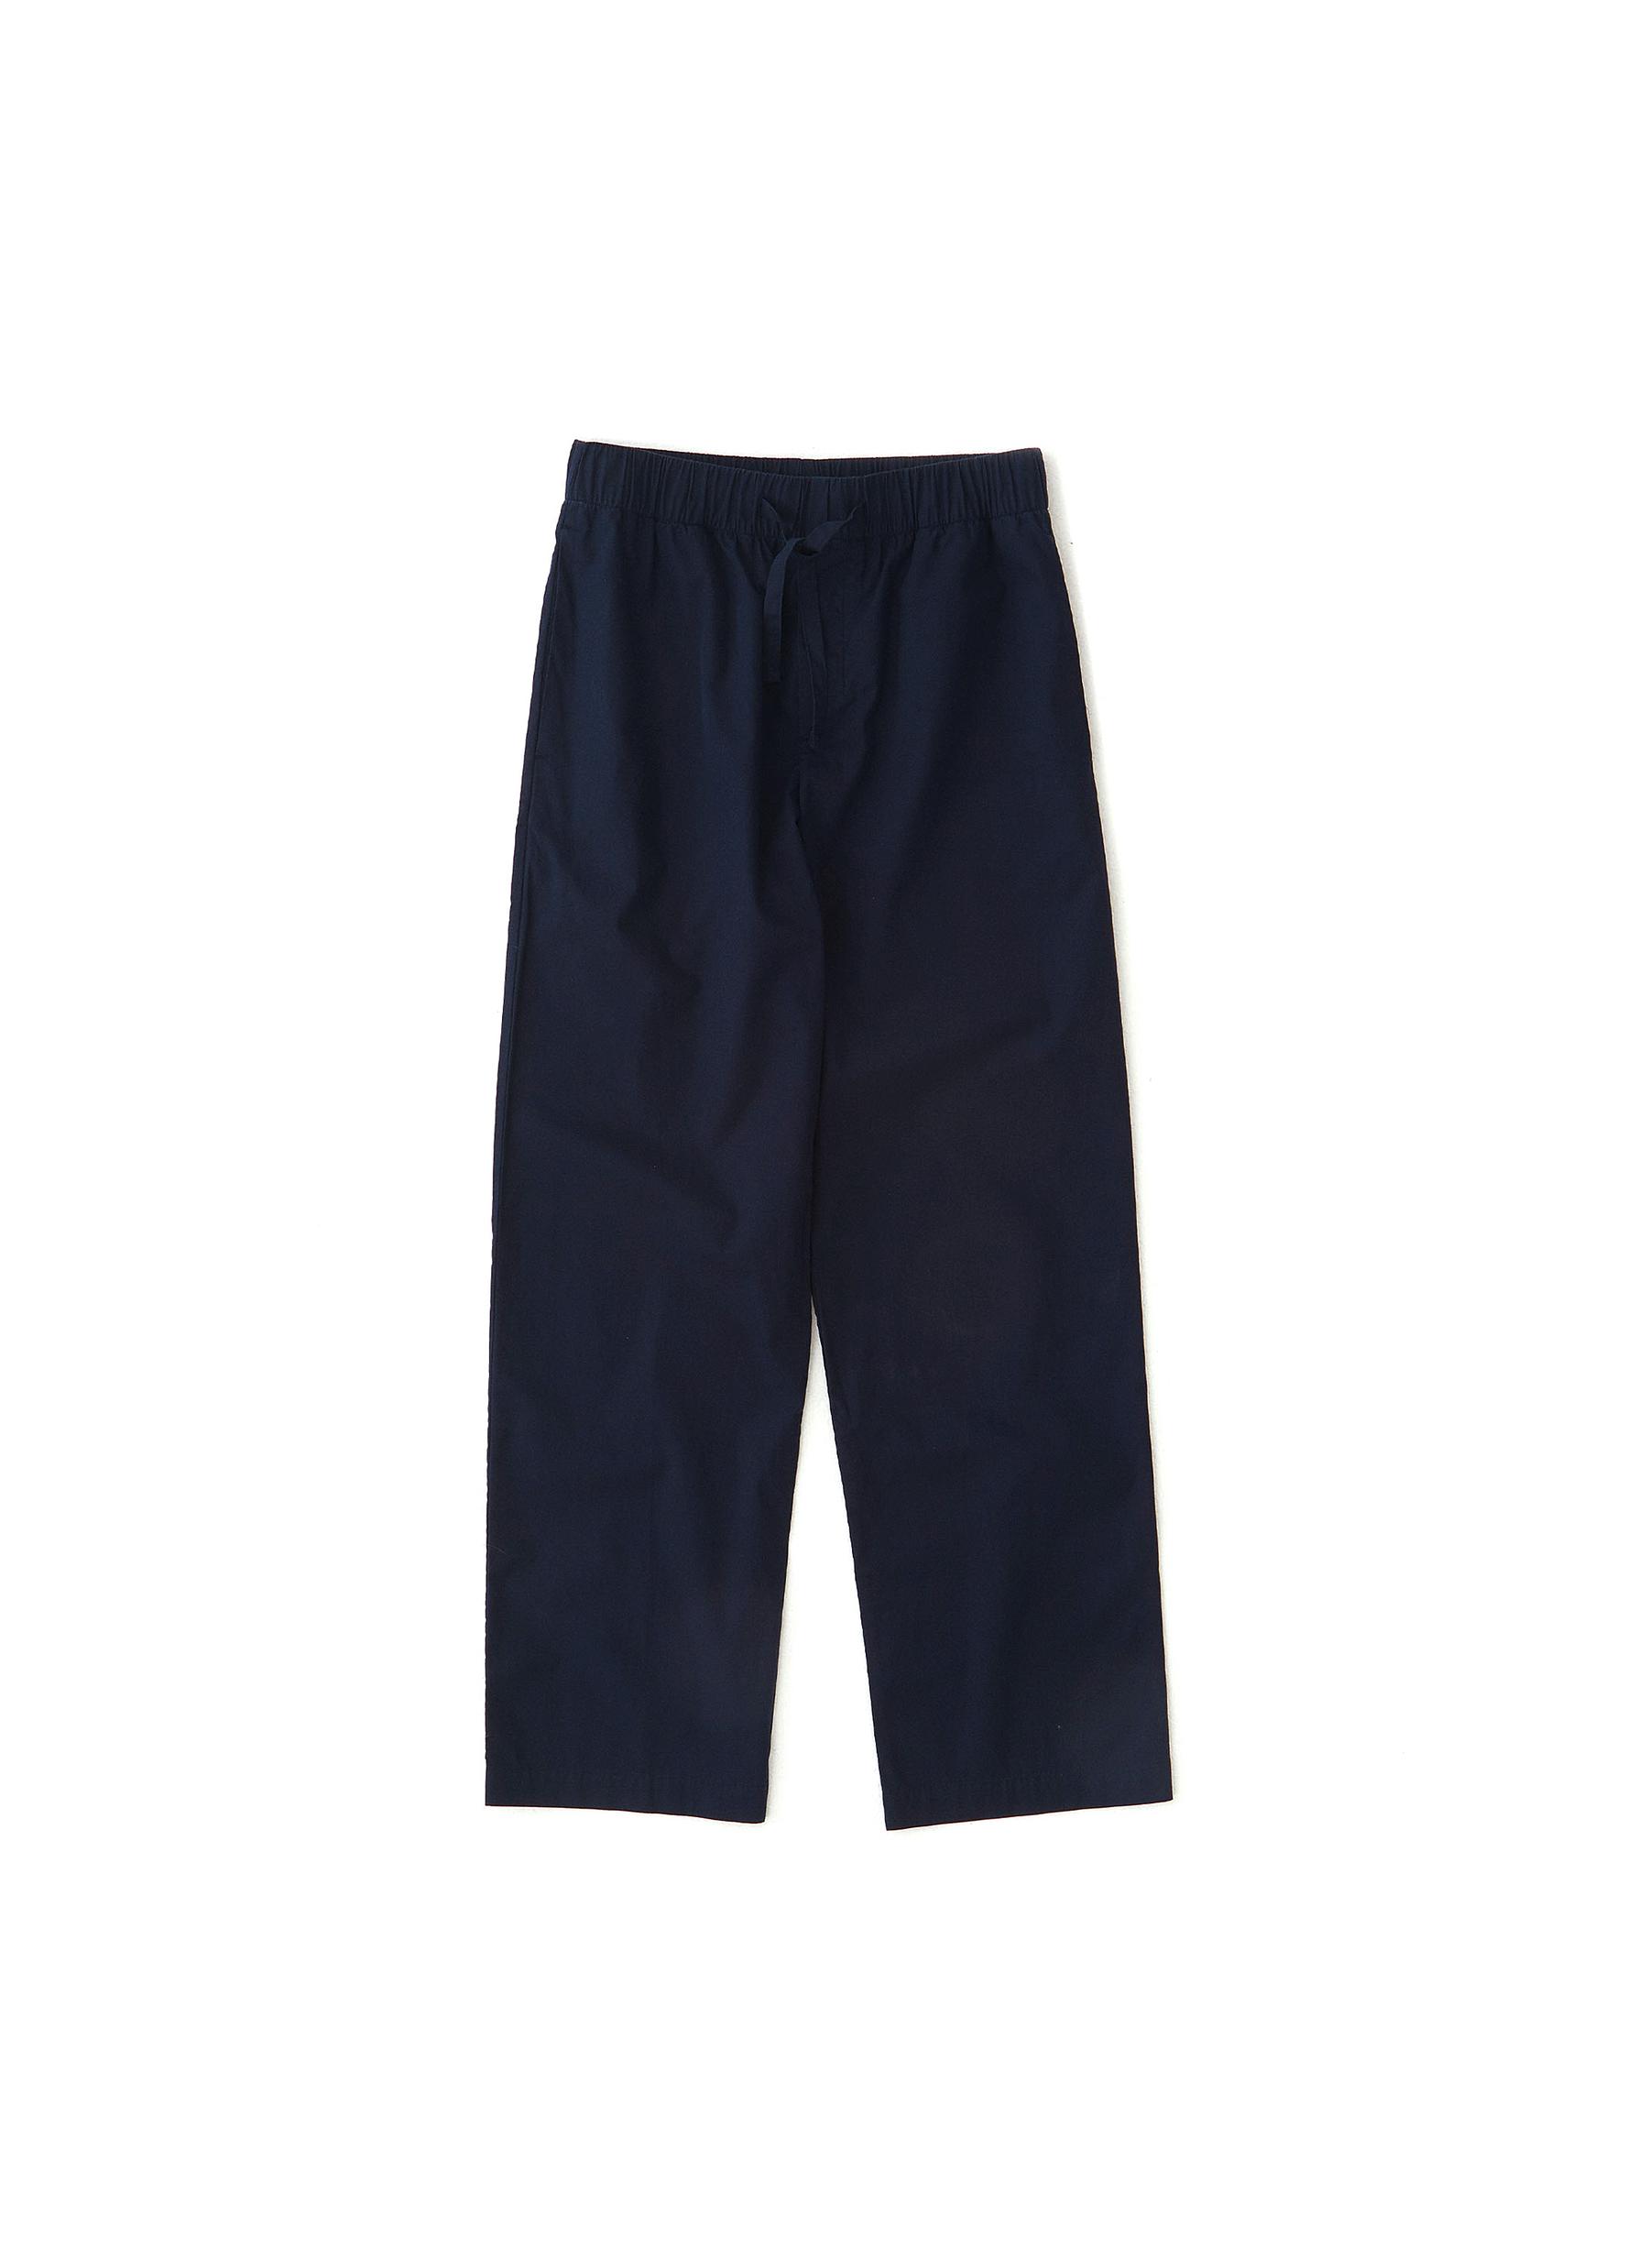 Tekla Kids' Small Poplin Pyjamas Pants - True Navy